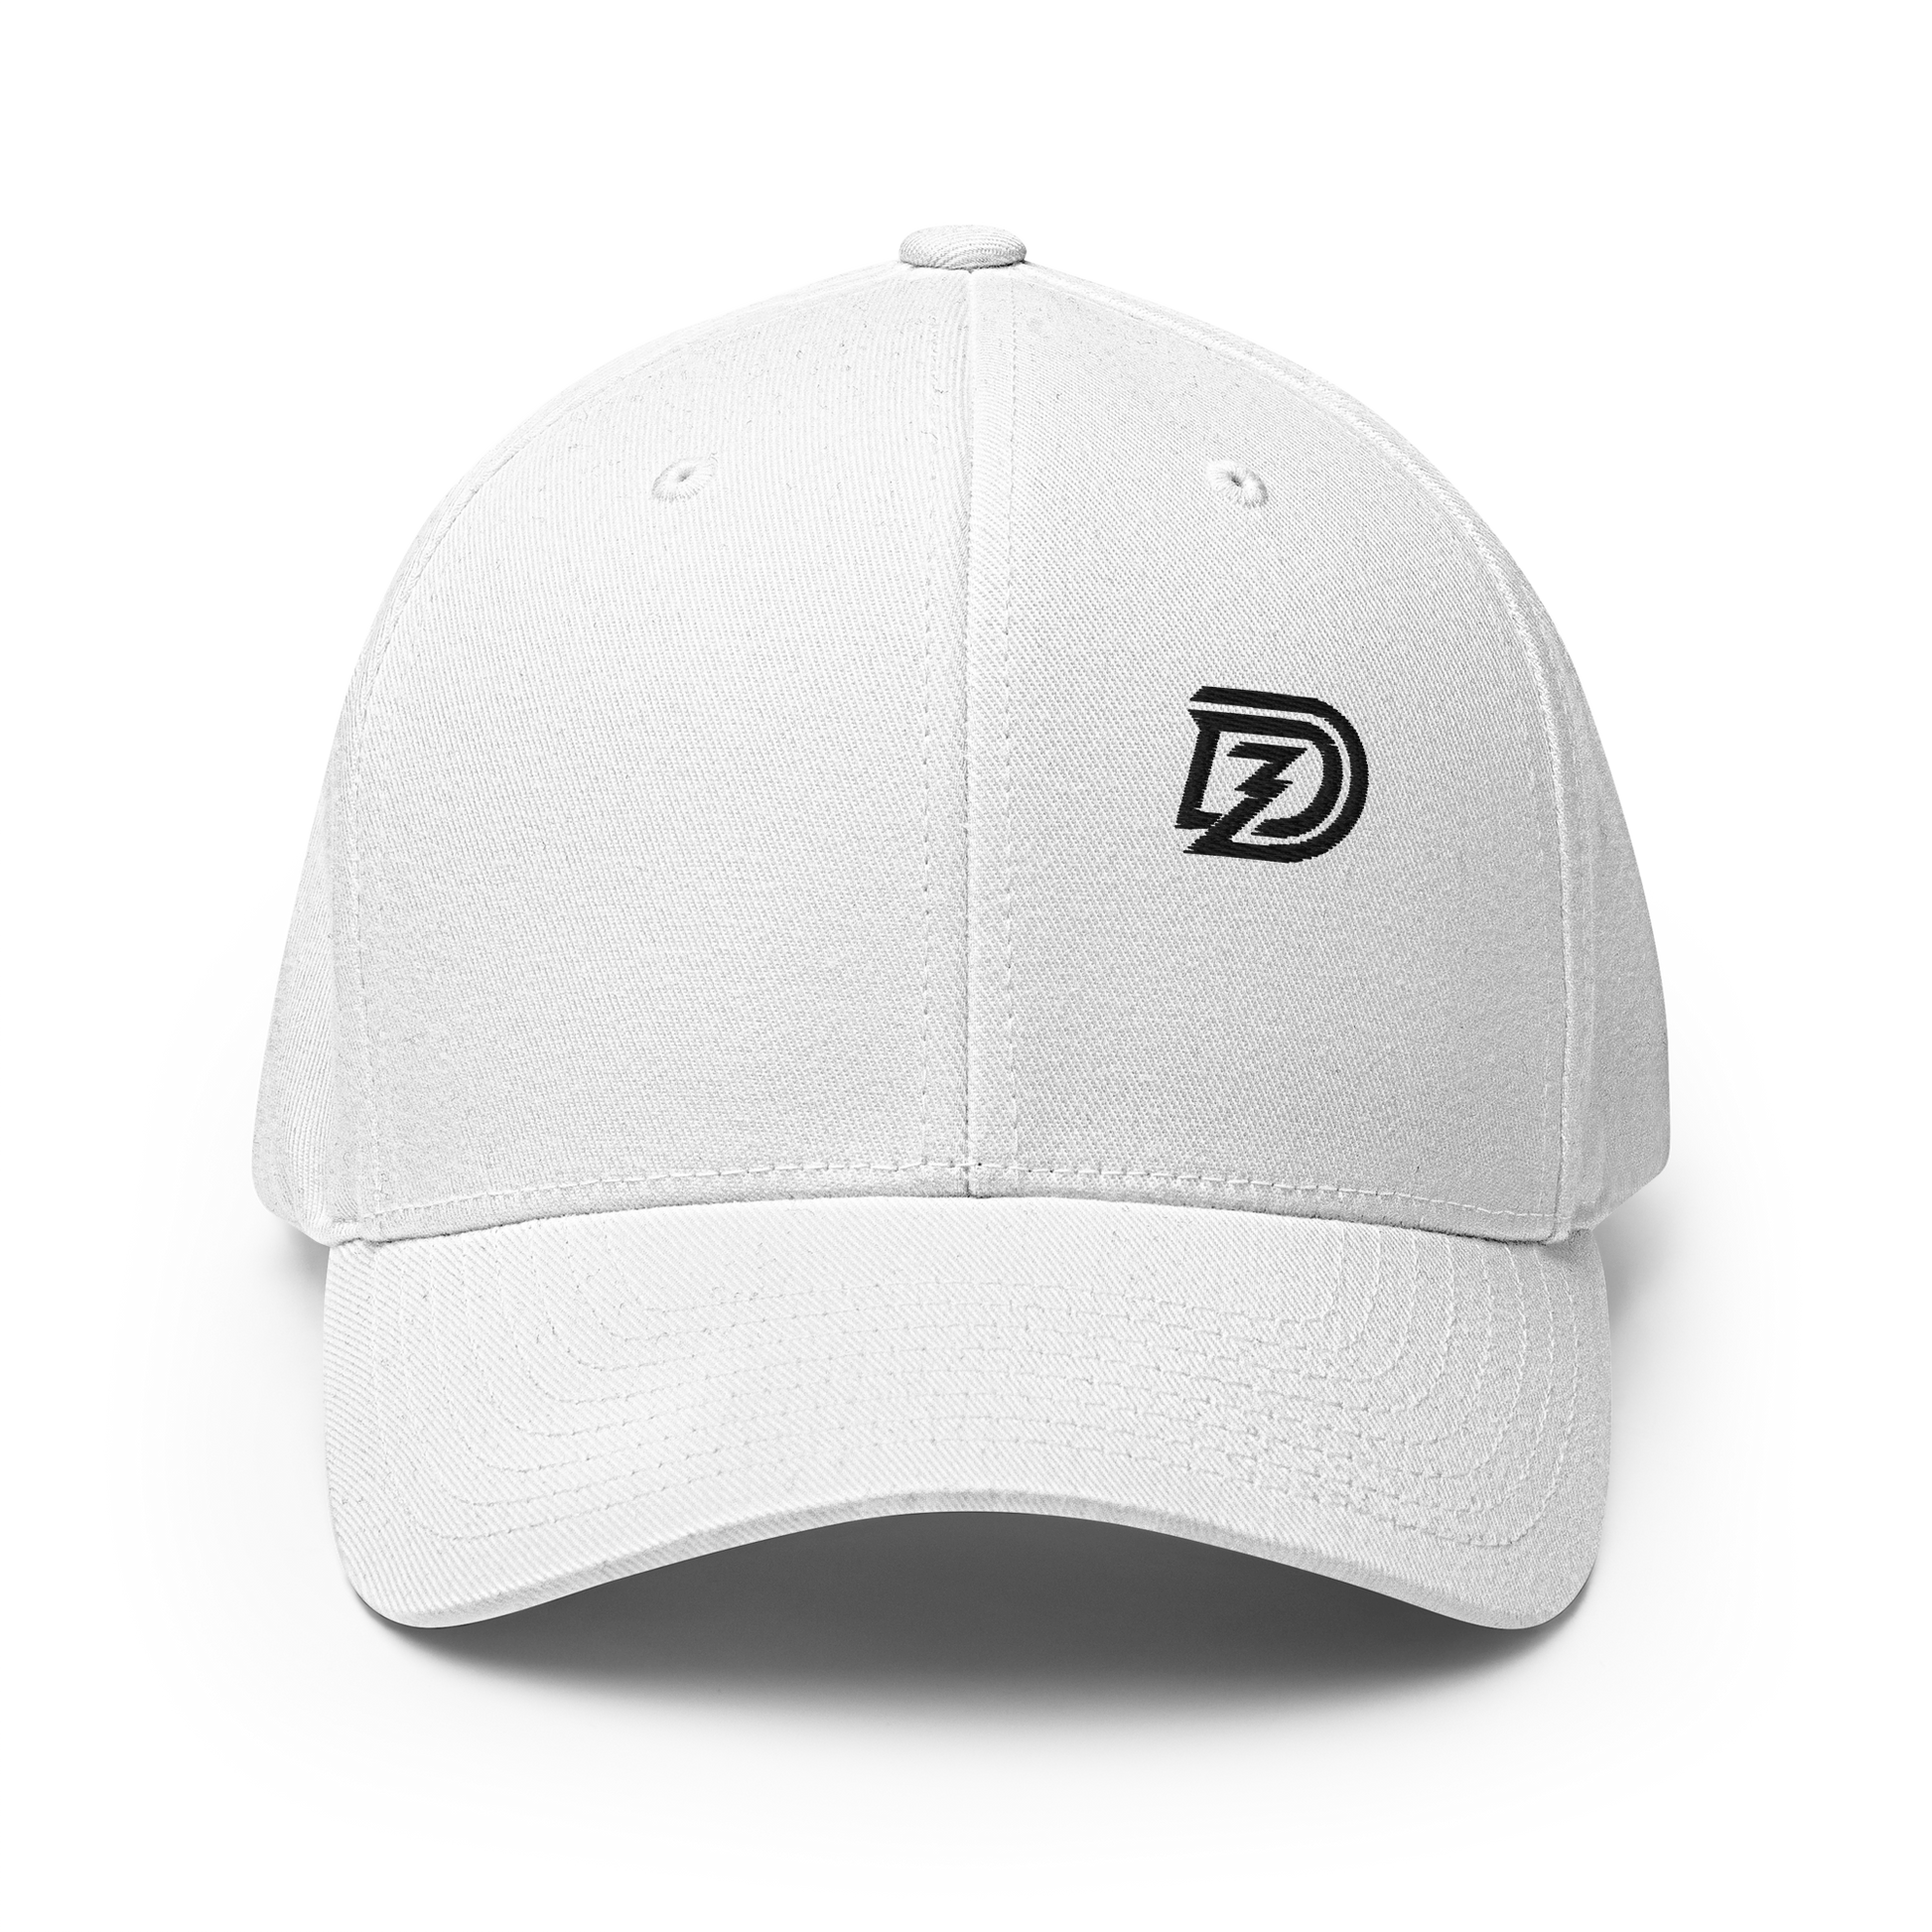 DZ Monochrome Flexfit Cap in White